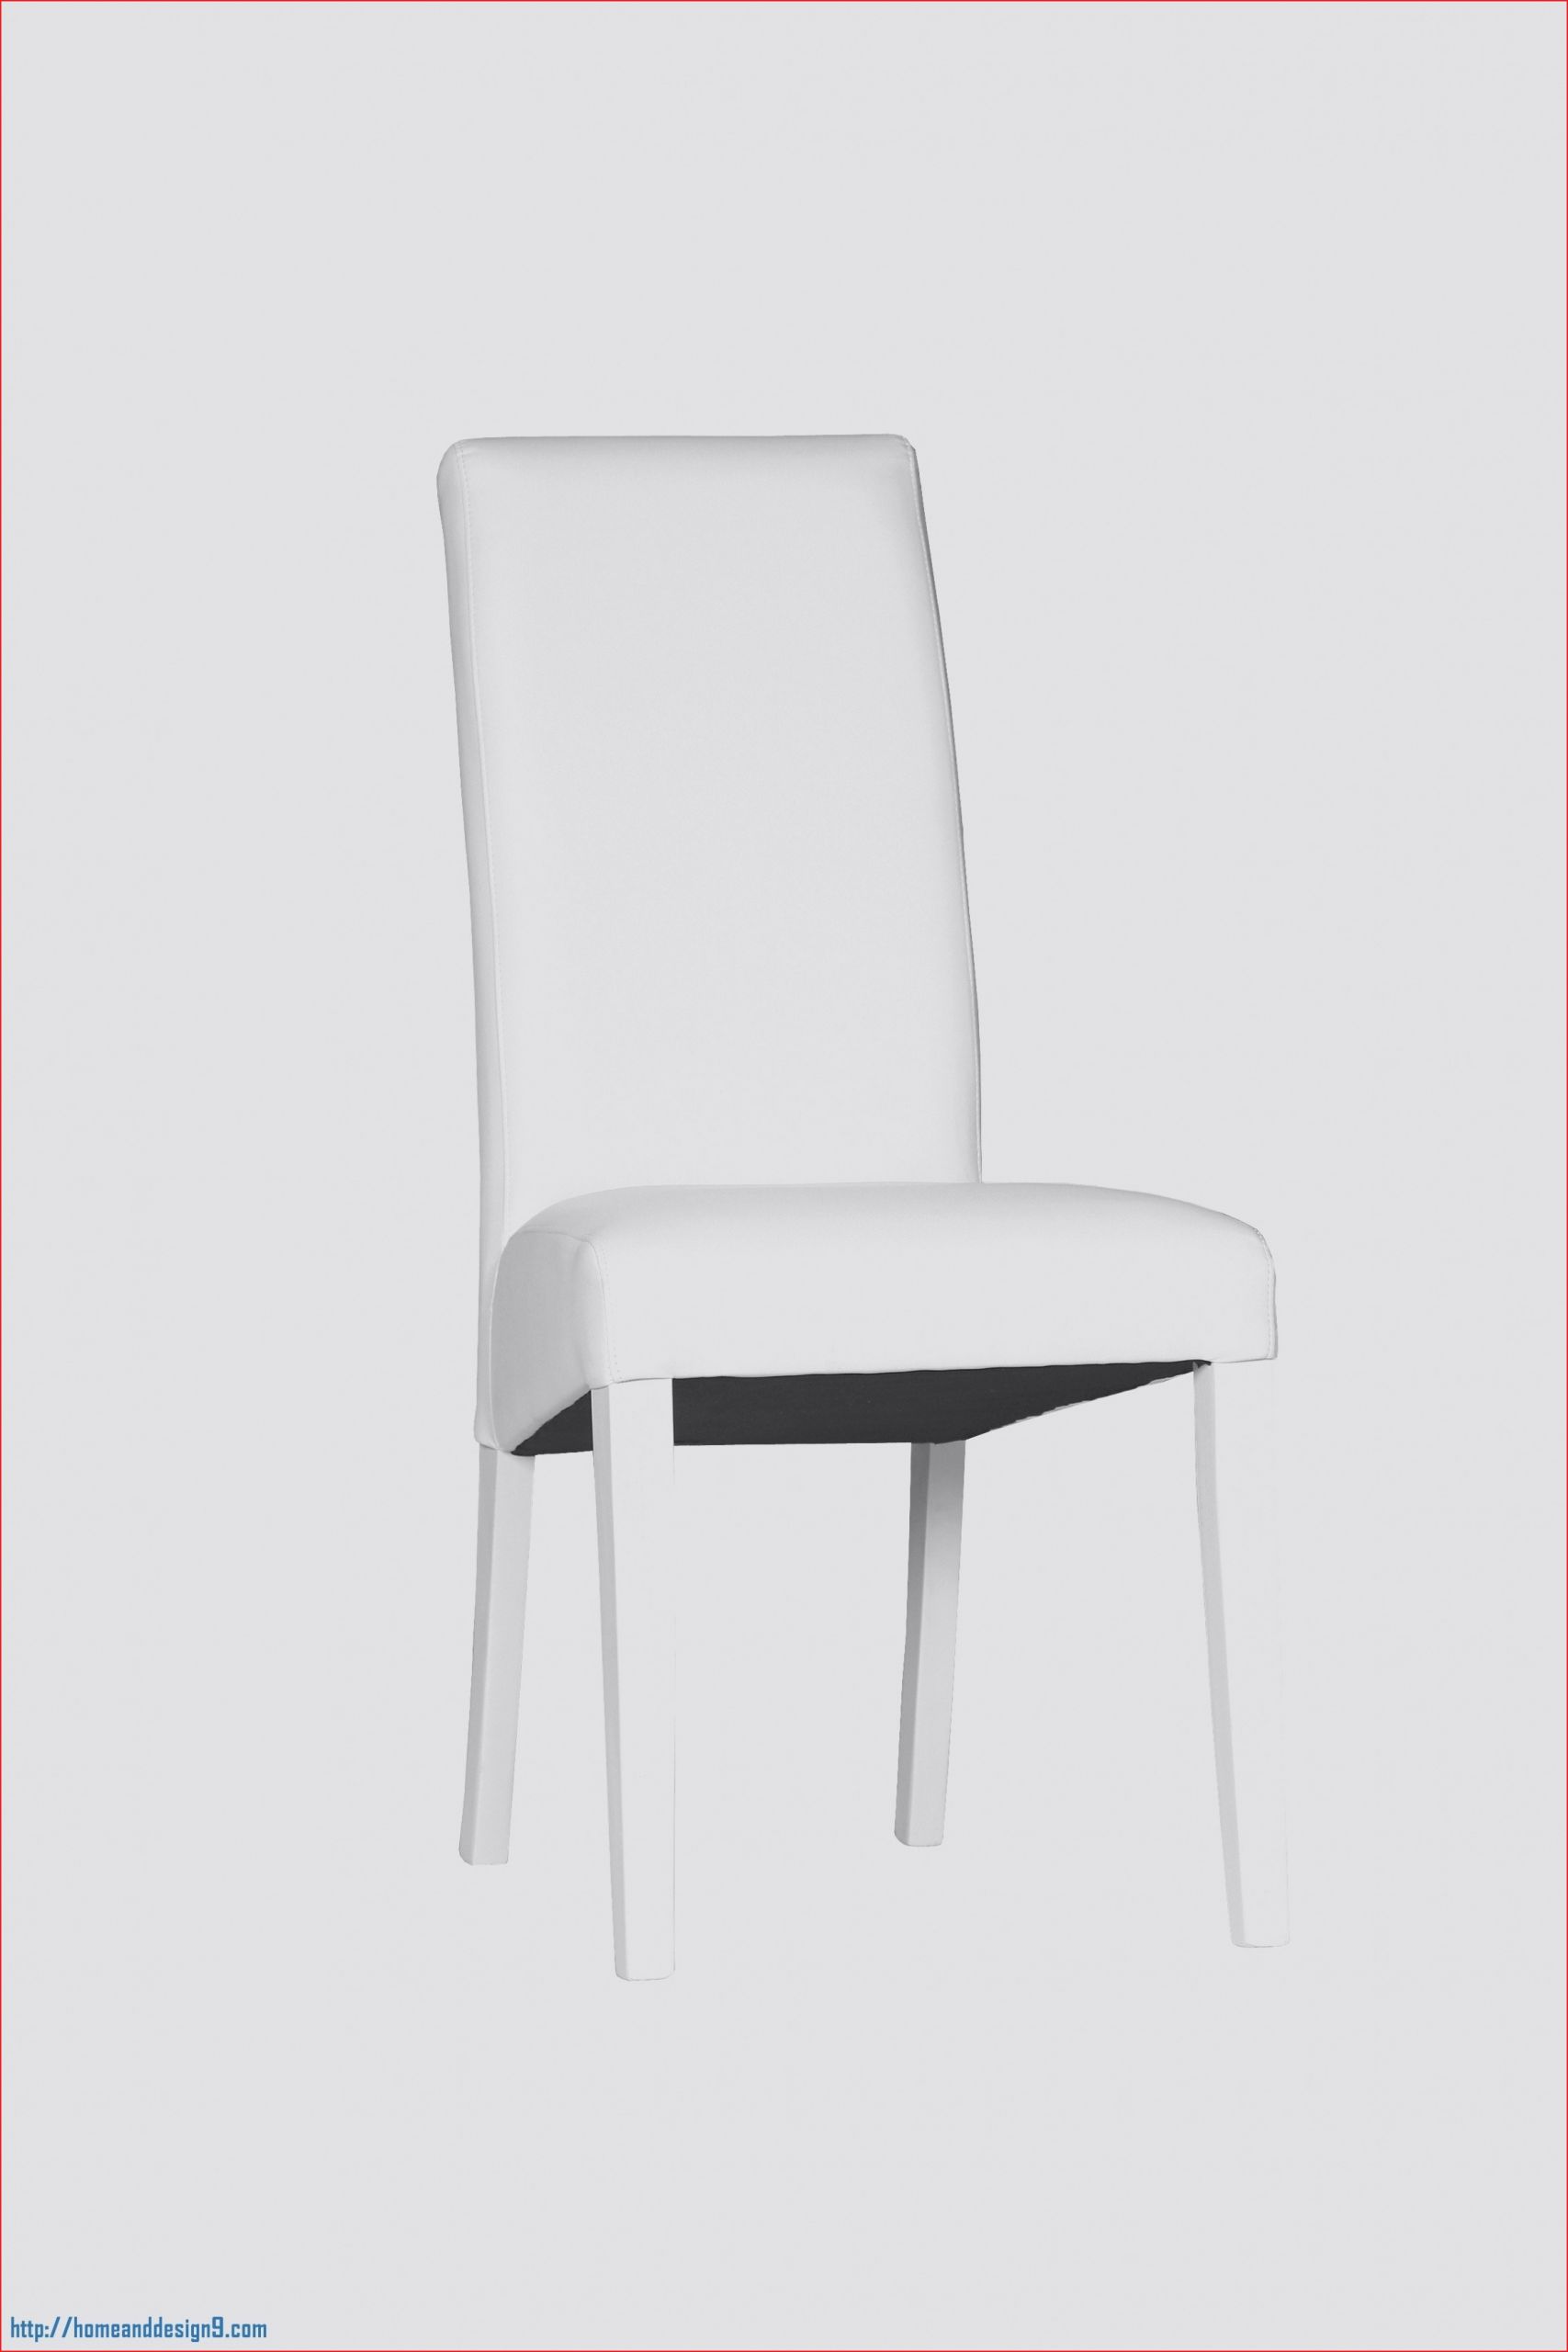 Table Et Banc Inspirant Génial Chaise Disign Galerie De Chaise Idée 2019